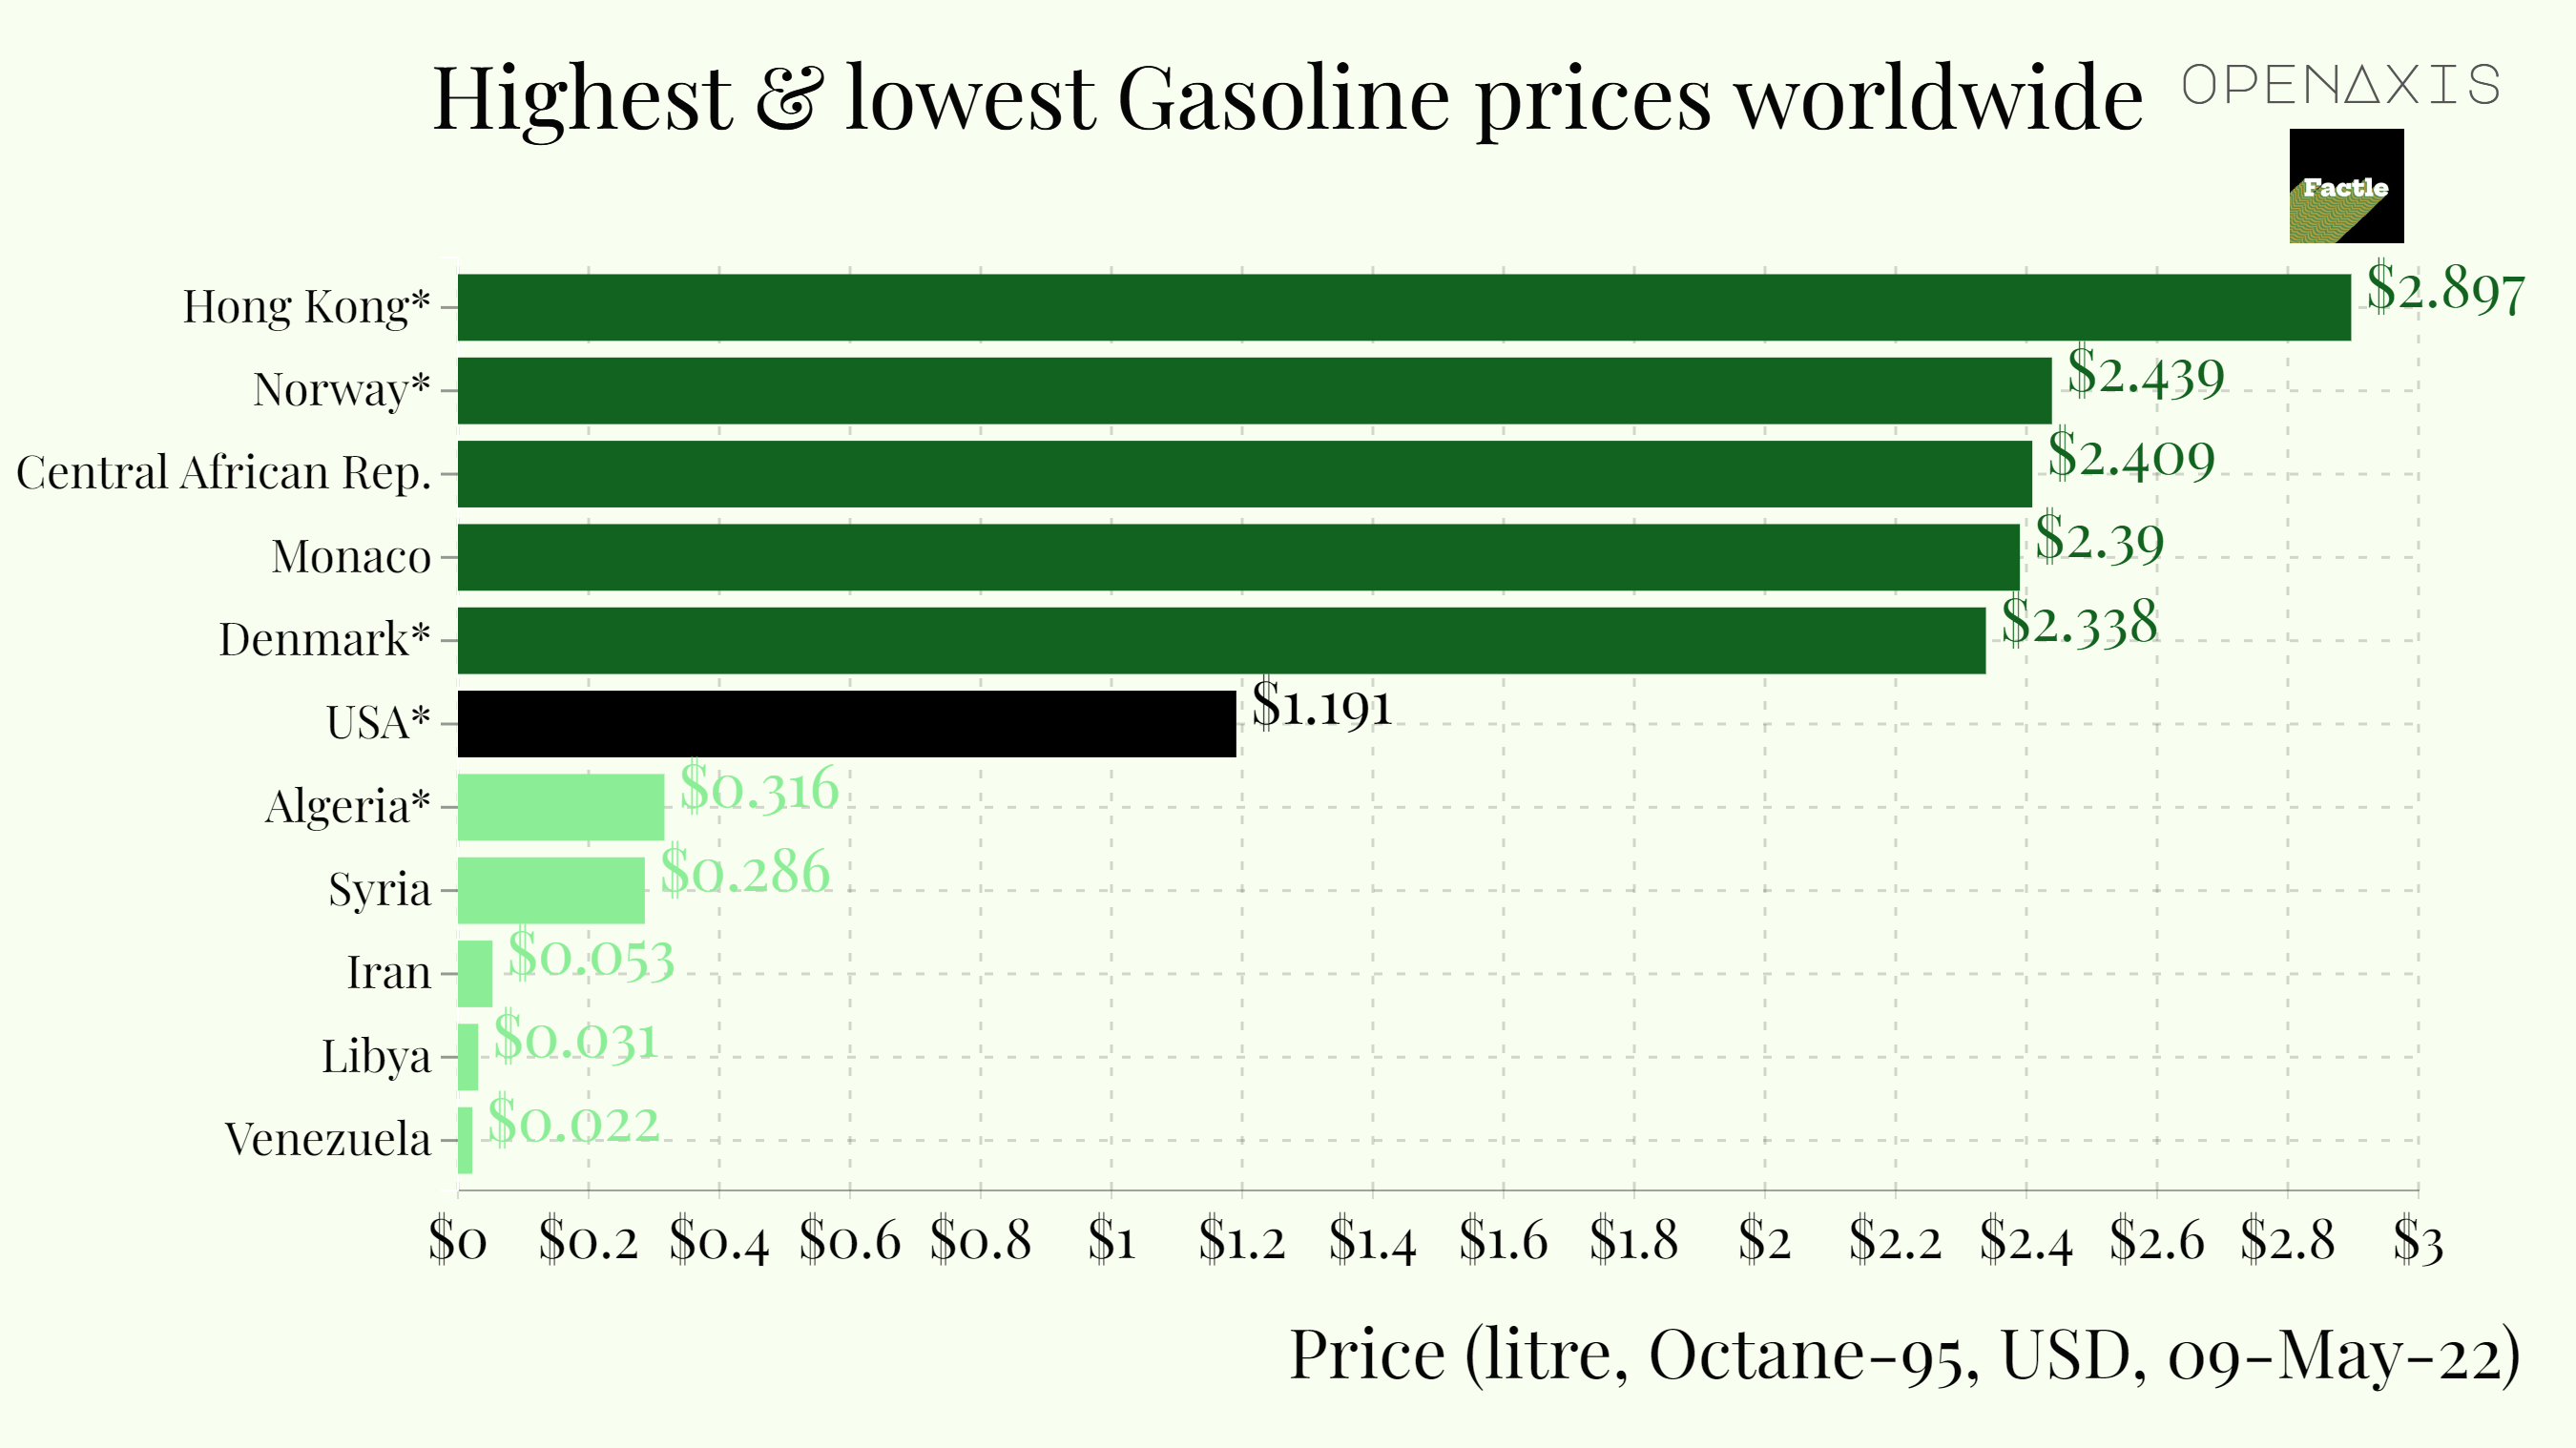 "Highest & lowest Gasoline prices worldwide"